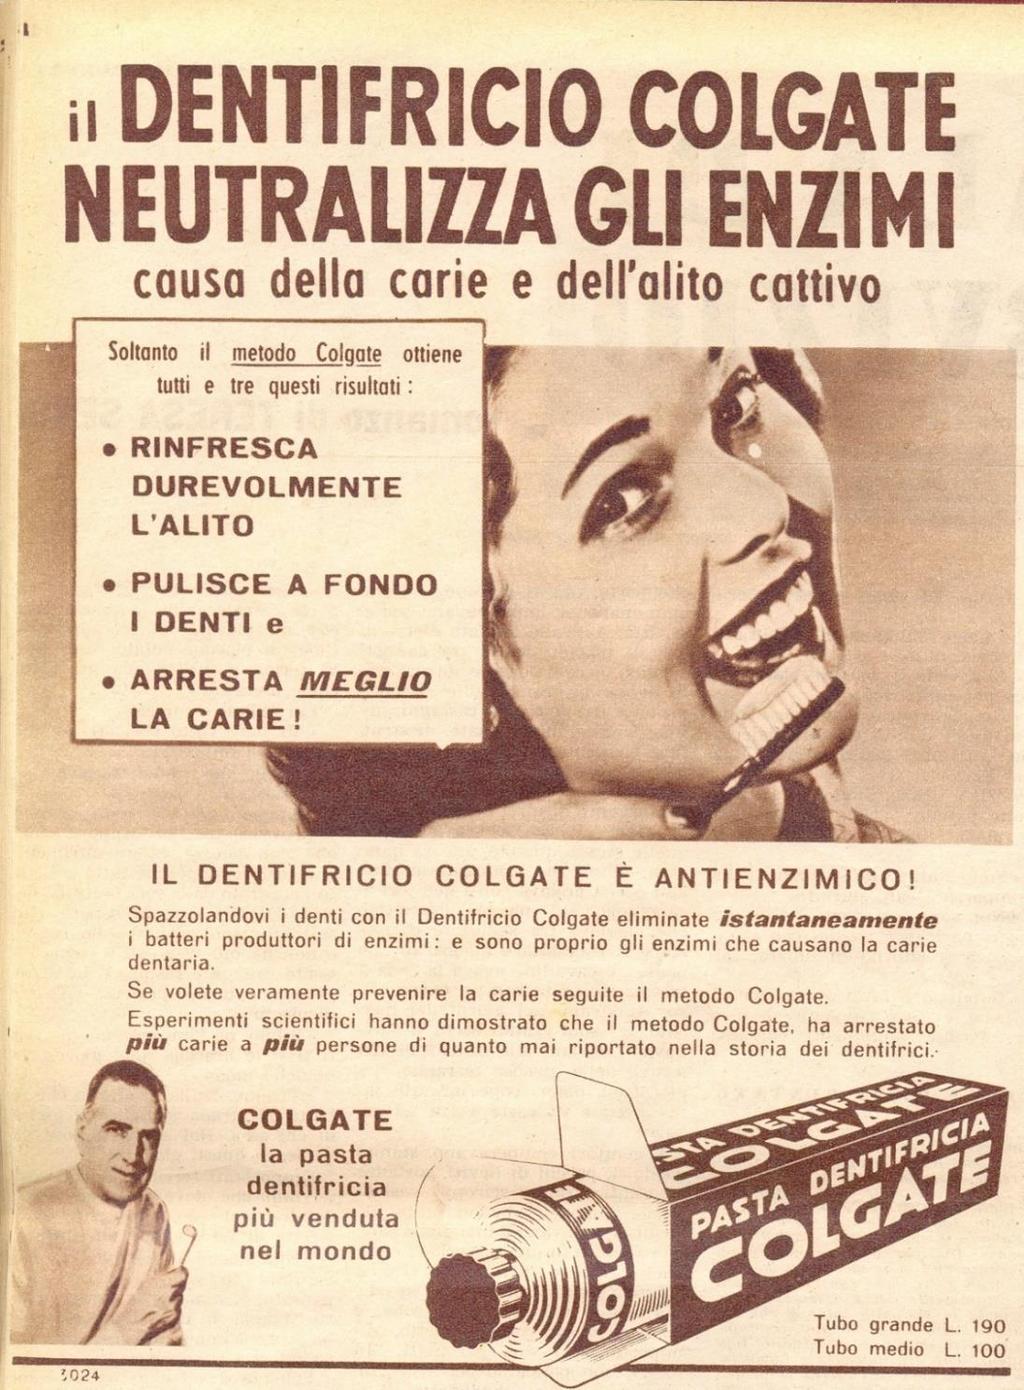 1952 Annuncio stampa Dentifricio Colgate Consumer benefits (la promessa)